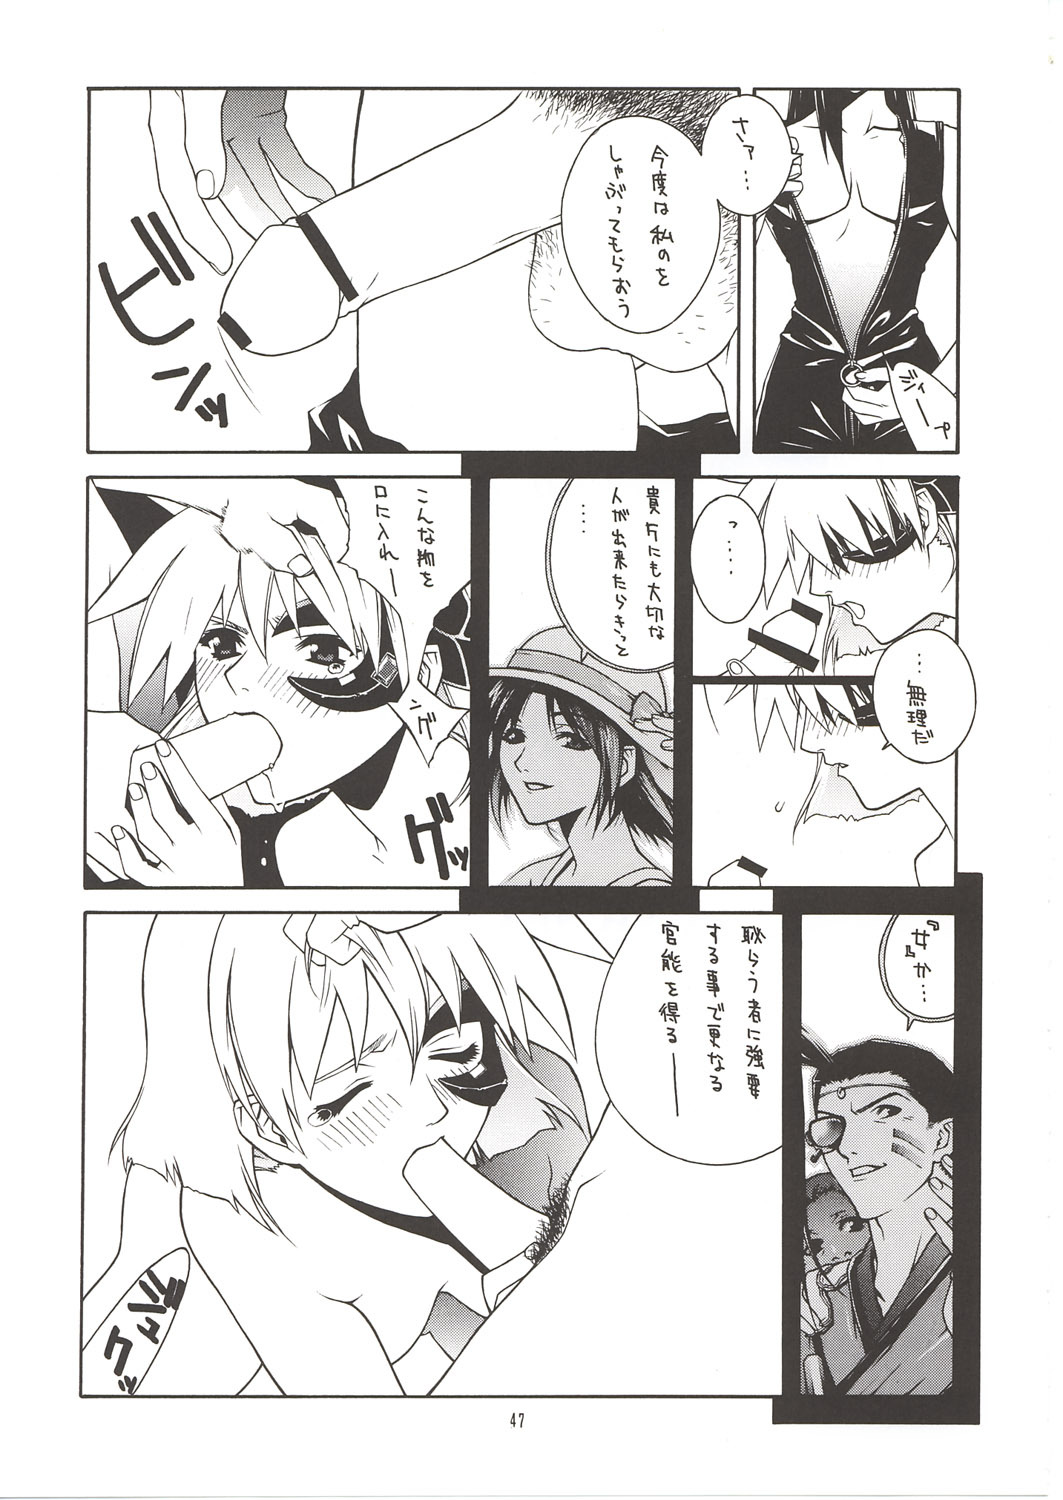 [IRODORI (Nitta Kumi)] MIX-JUICE (Onegai Teacher, Sakura Taisen 3, Vandread) page 46 full